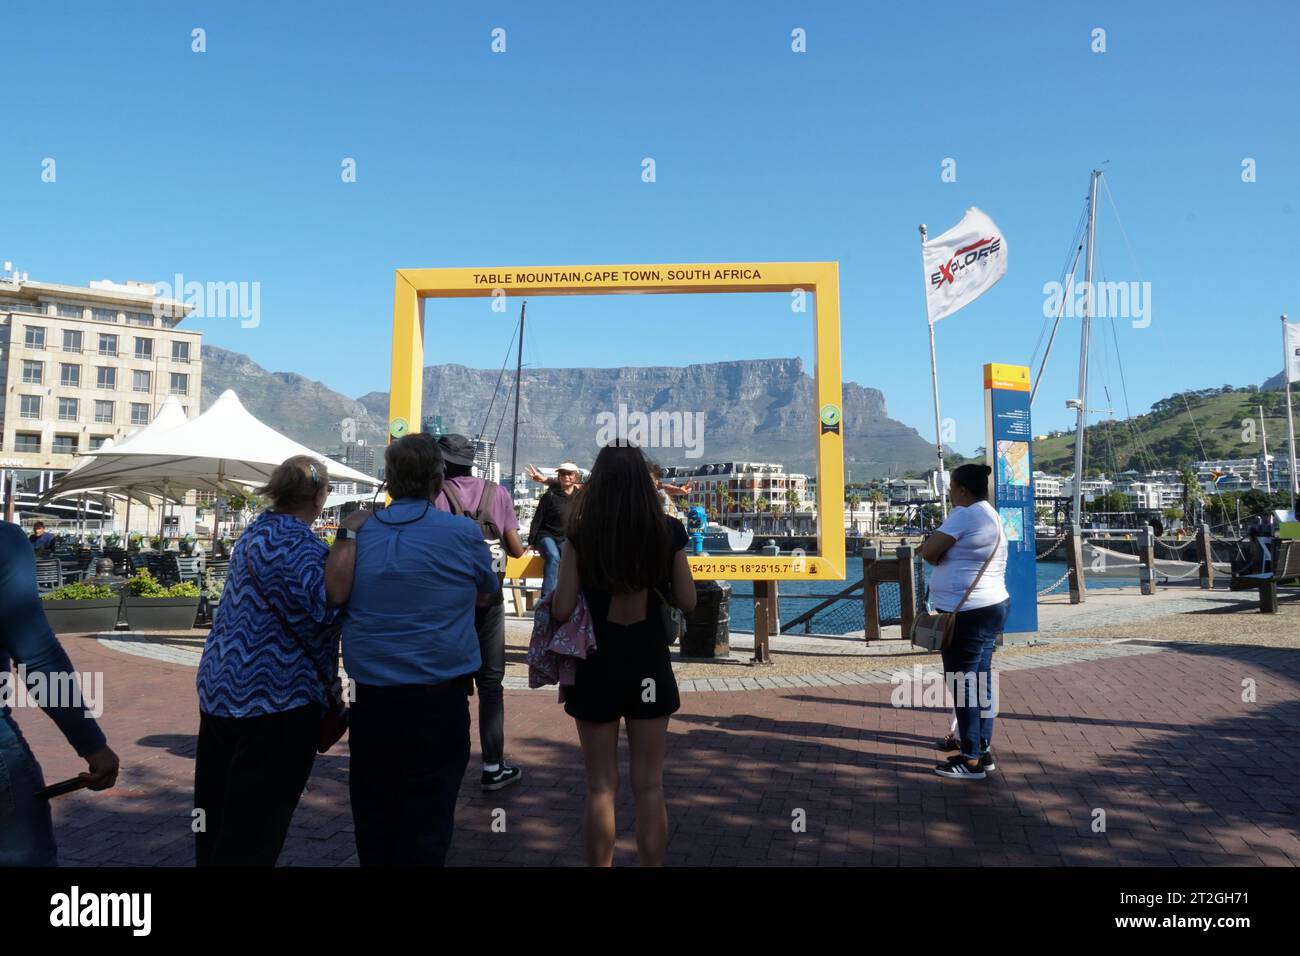 Cadre photo touristique jaune avec Table Mountain dans Waterfront avec beaucoup de touristes en attente de faire des photos. Banque D'Images